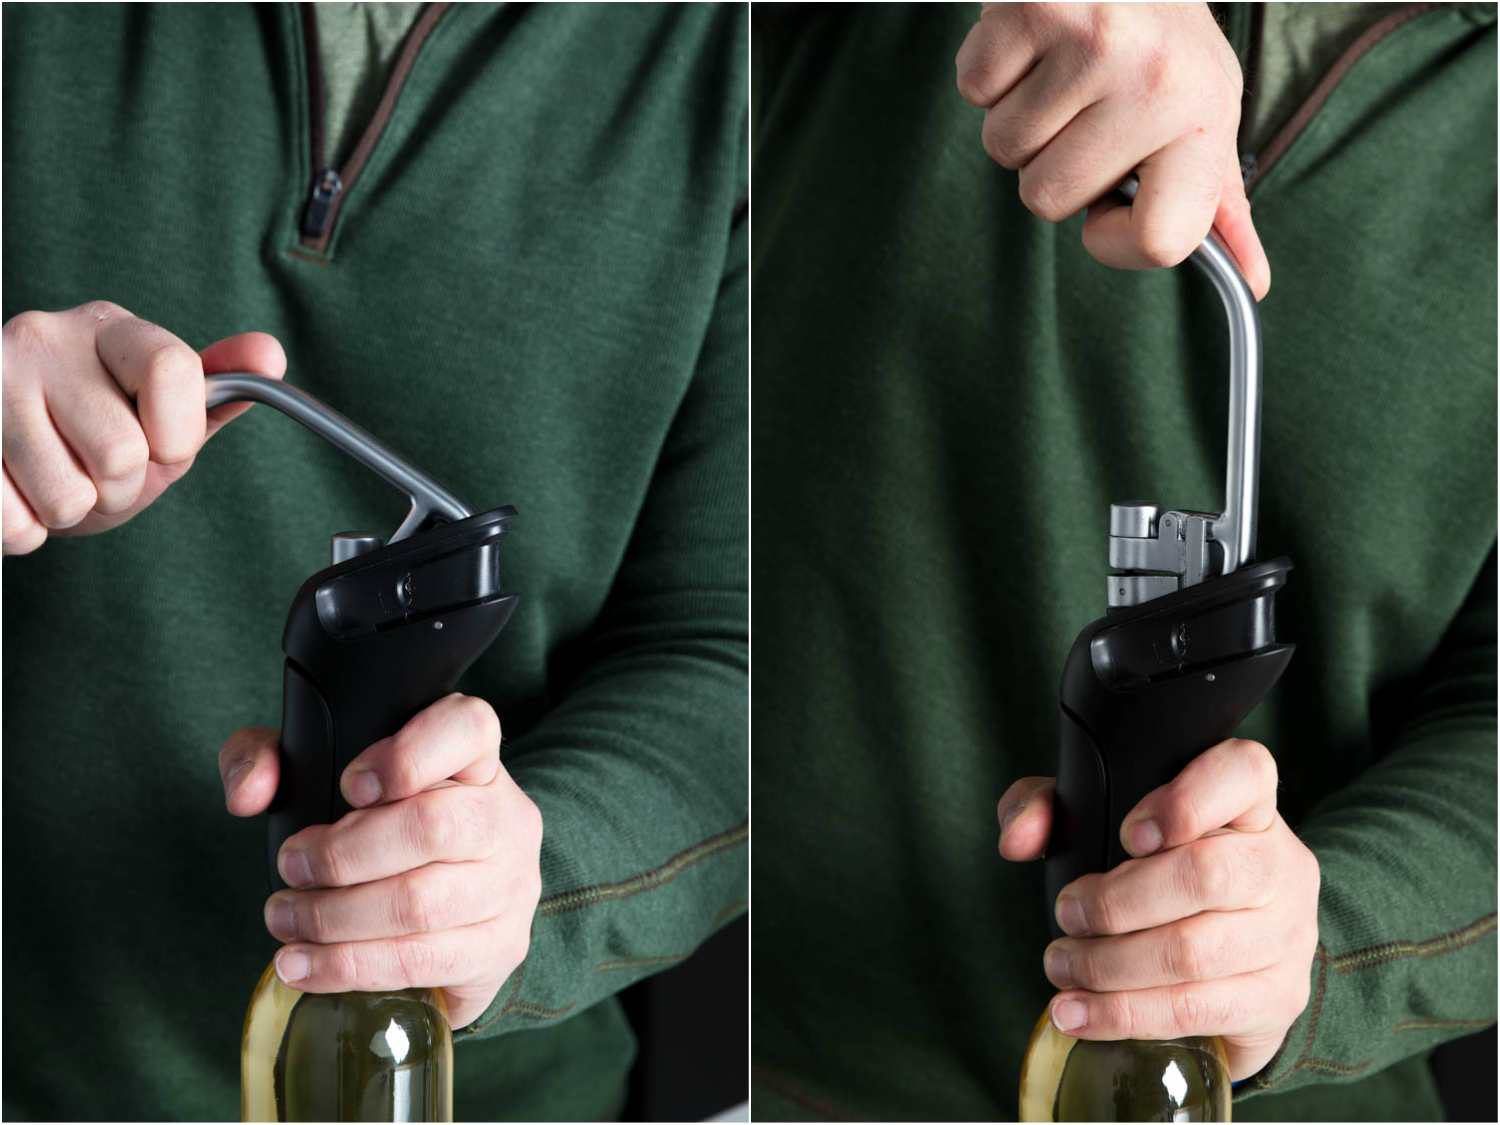 使用OXO杠杆开瓶器开瓶有两个阶段:向下推，然后向上拉